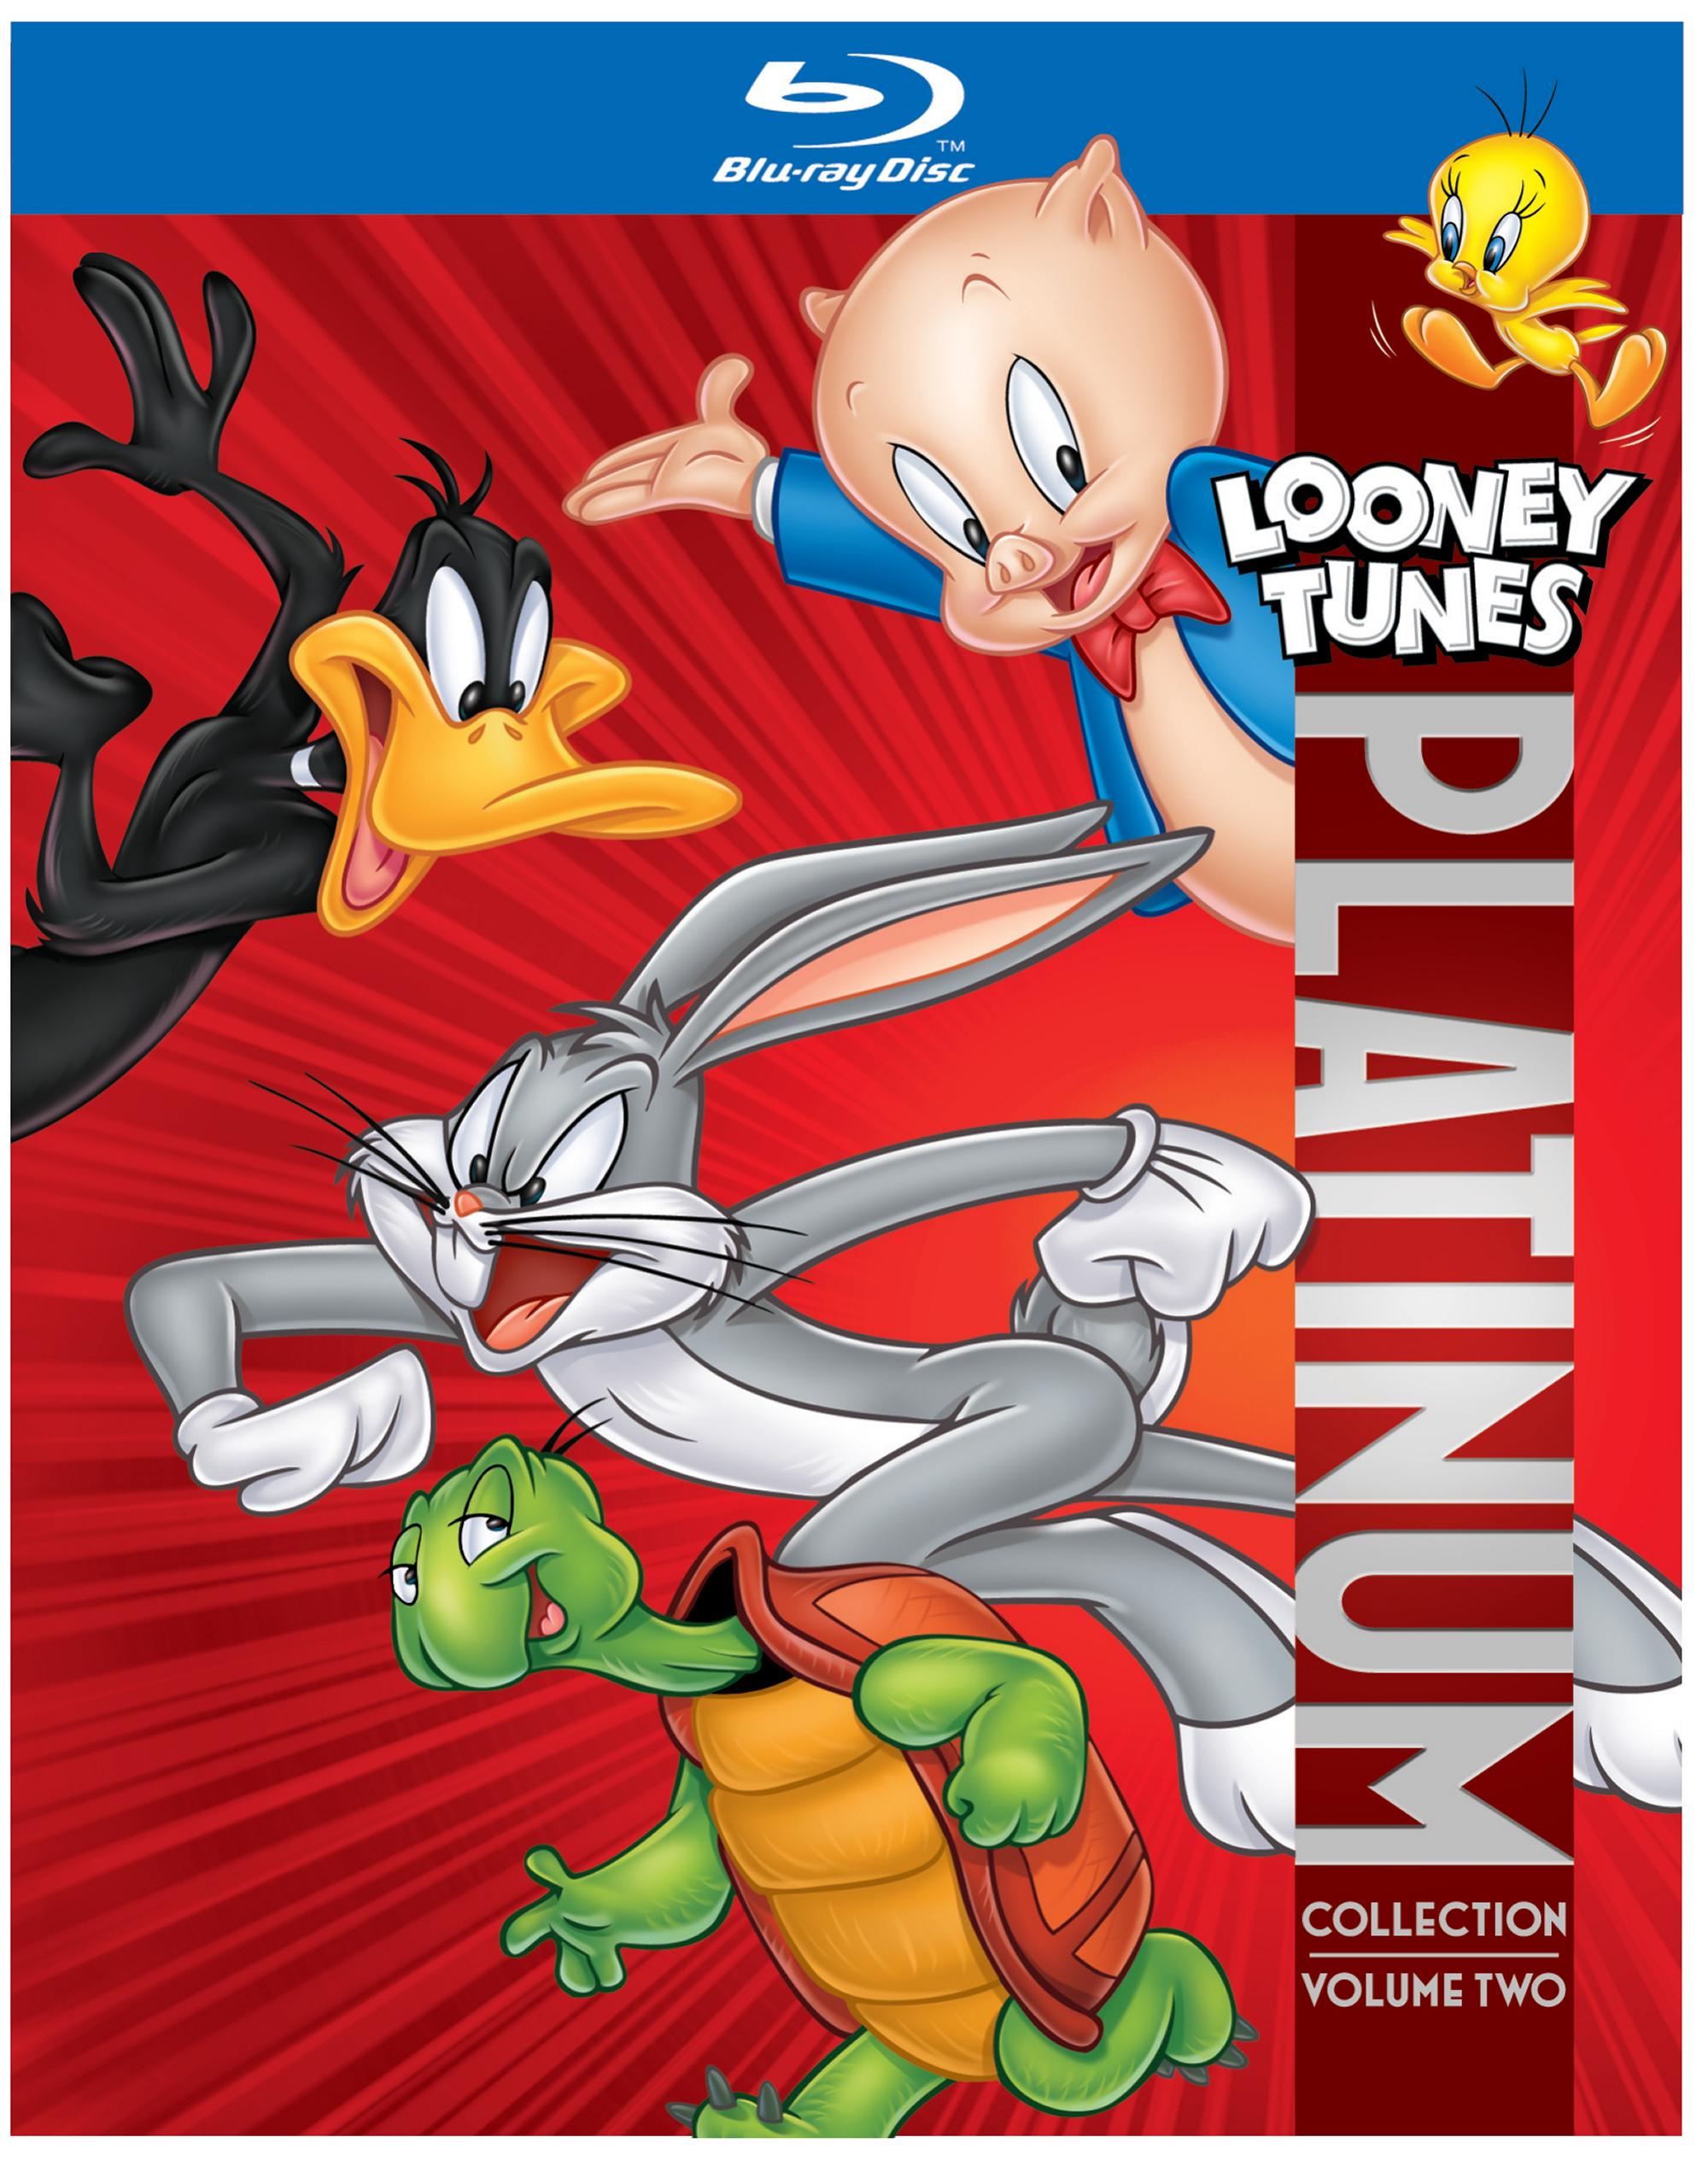 Looney-Tunes-Vol2.jpg